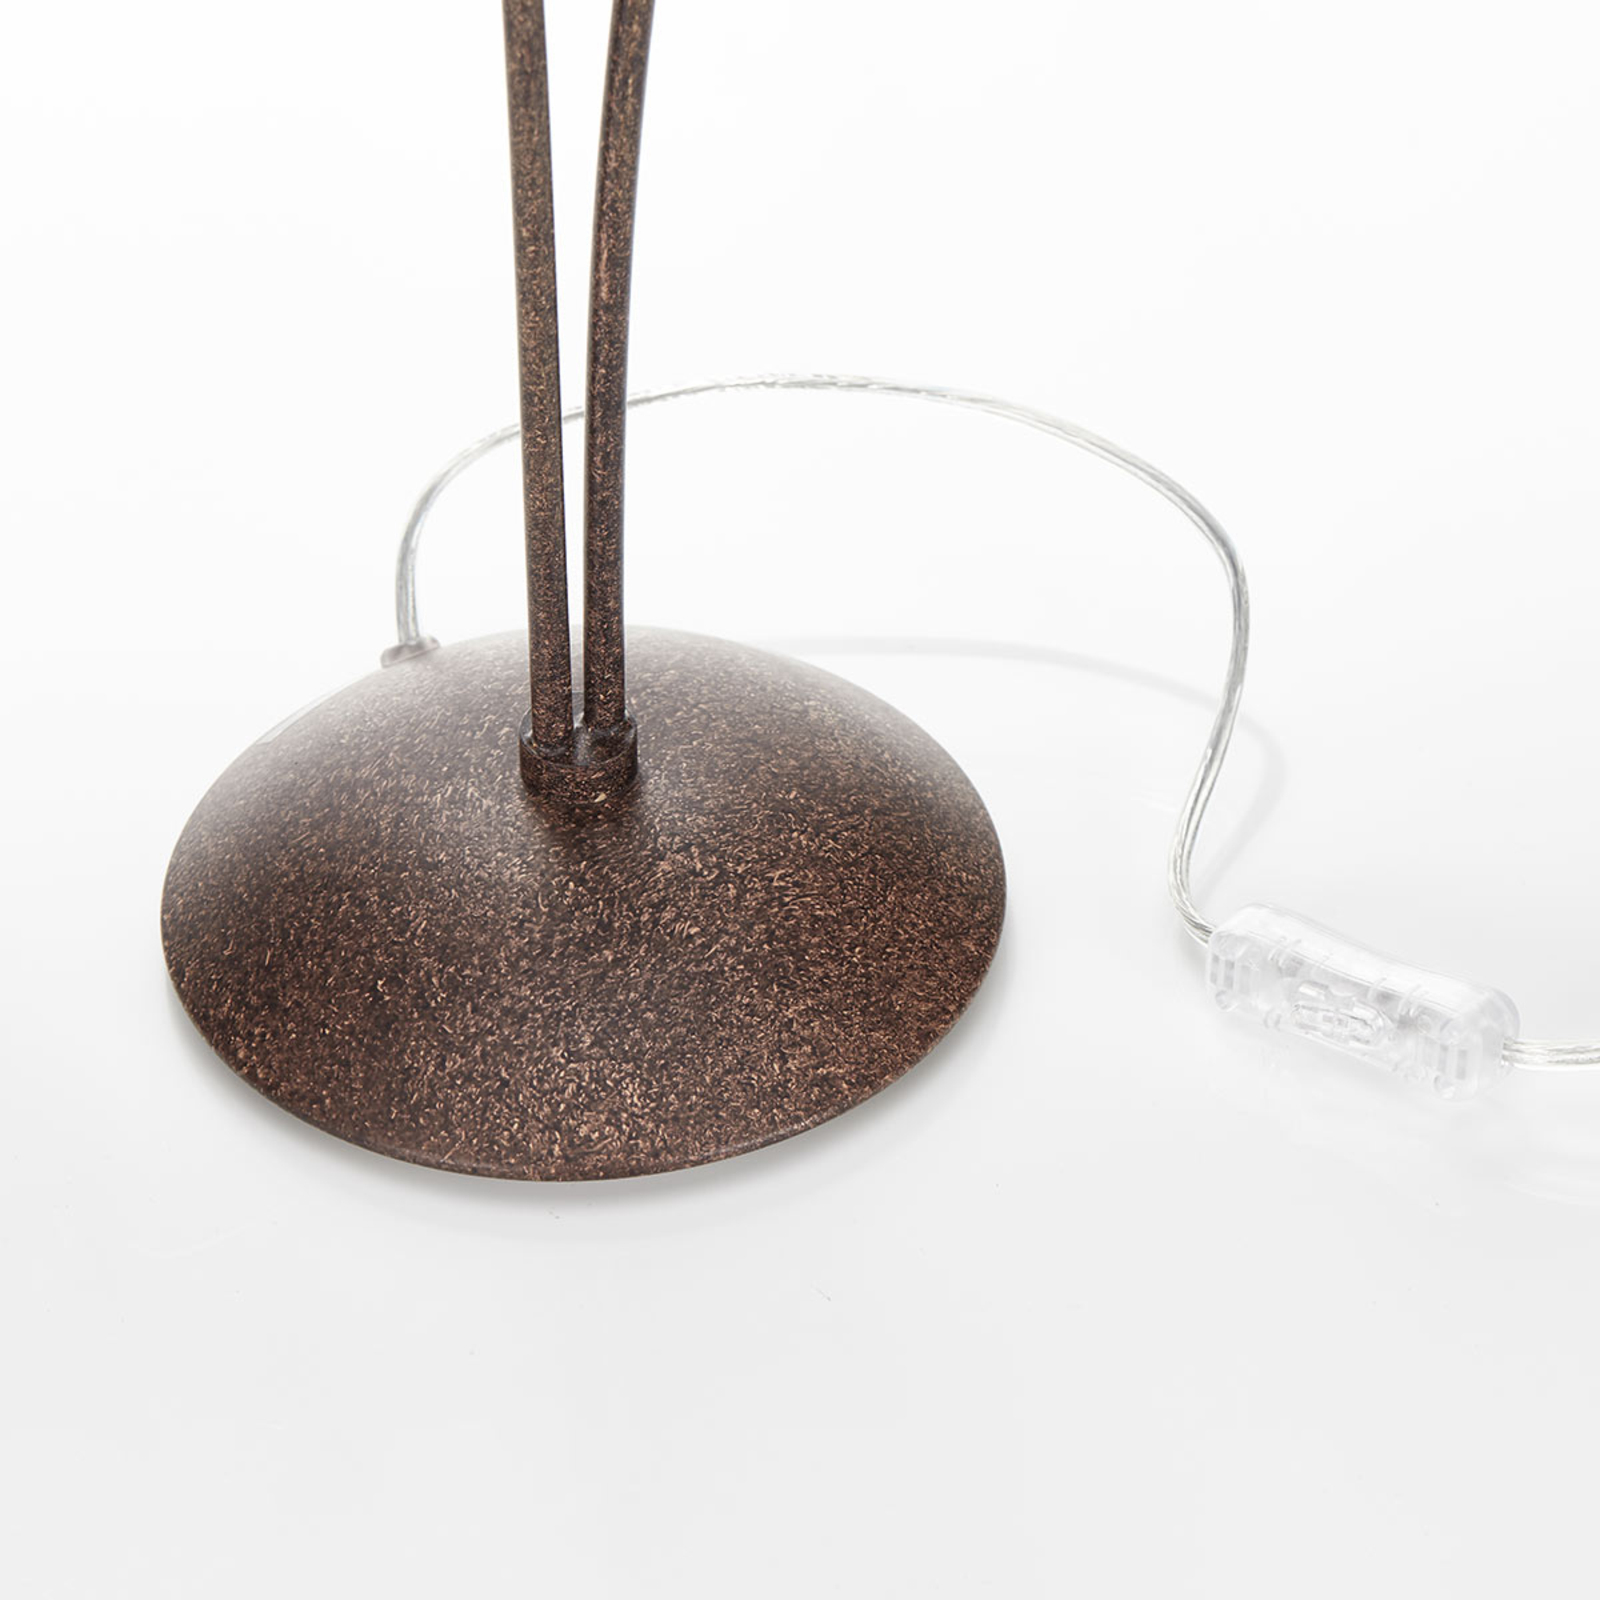 Stolní lampa Greta v rezavém designu, dvouramenná